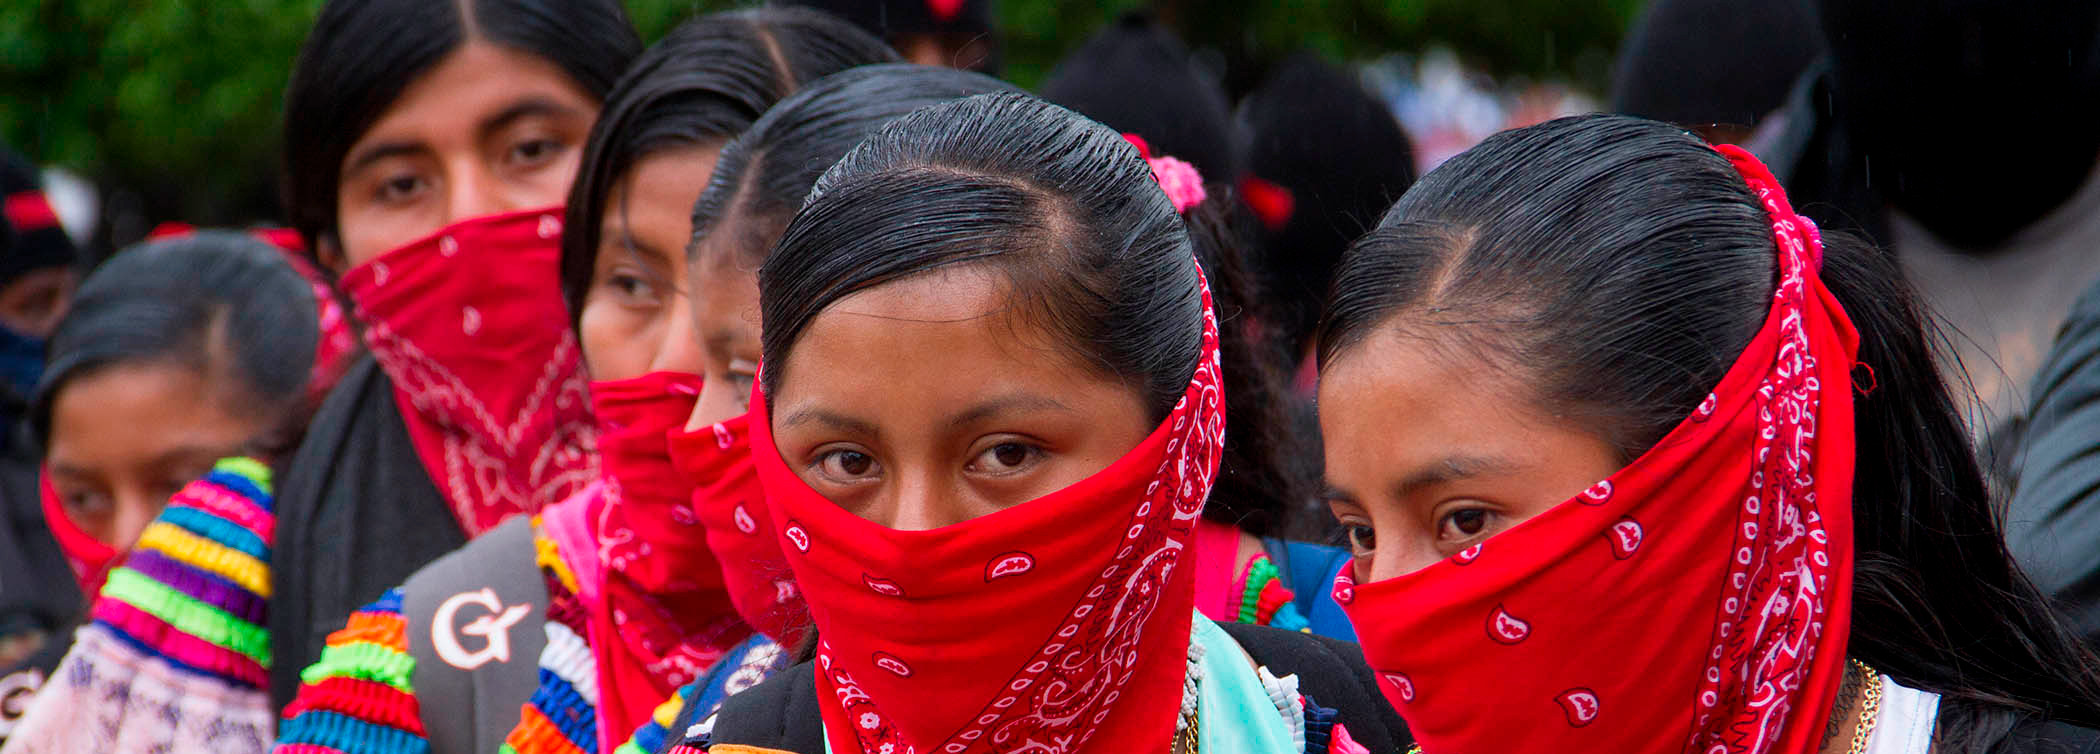 Rojava, Makhmur y Chiapas: Construir y defender una alternativa a la modernidad capitalista